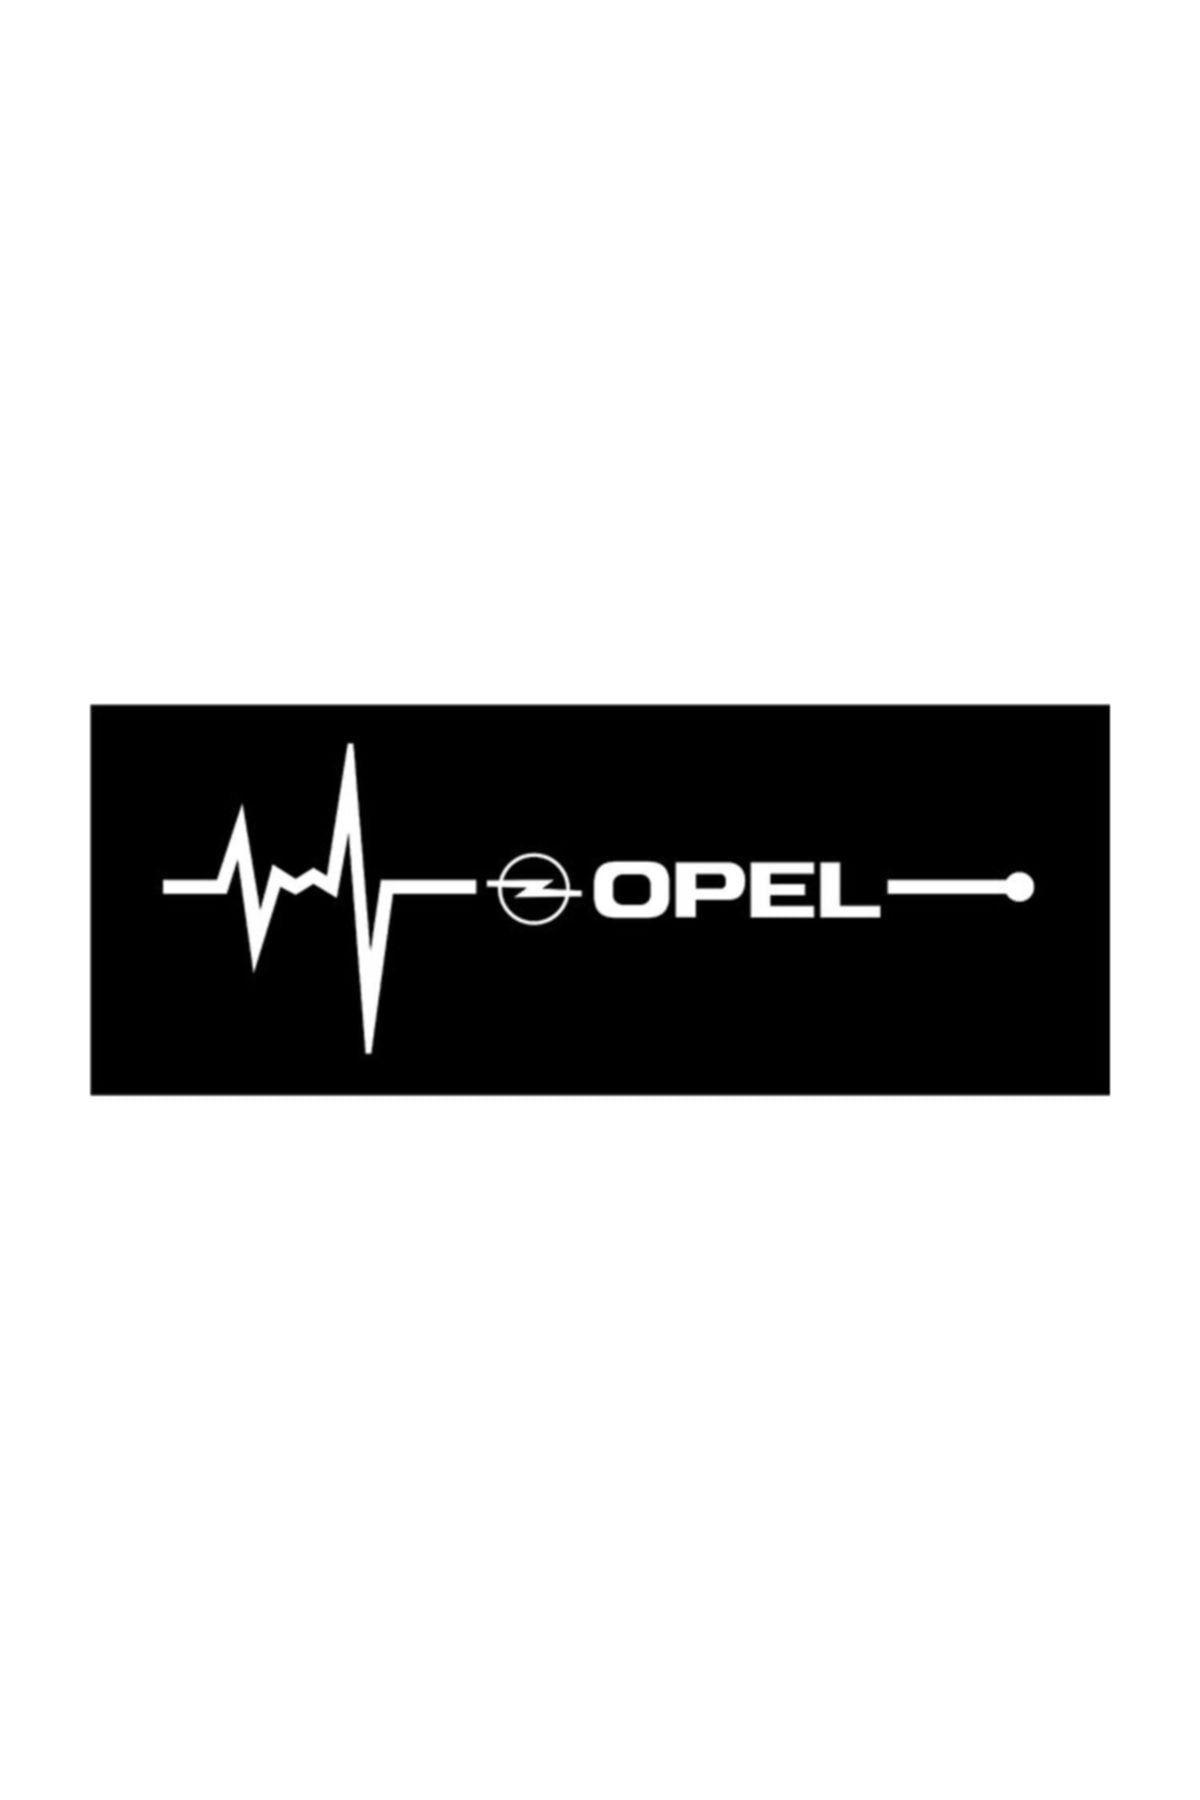 TSC Opel Napız Kalp Kelebek Cam Için Sticker Yapıştırma